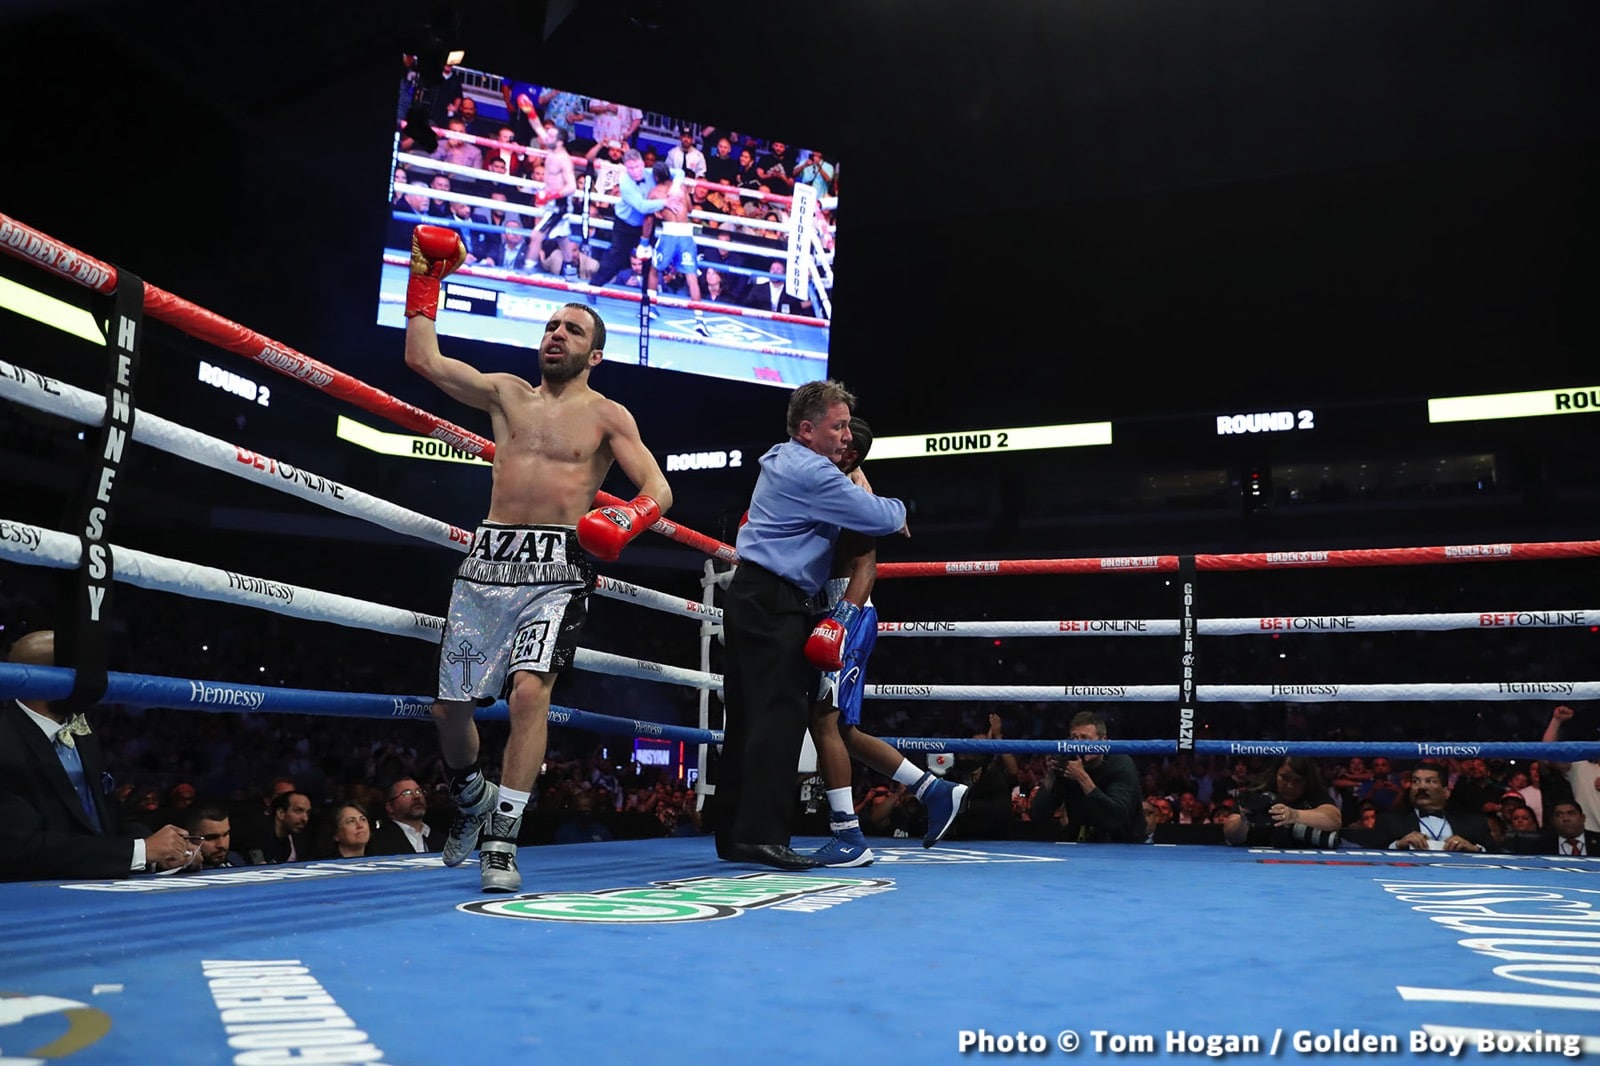 Ryan Garcia vs. Emmanuel Tagoe - LIVE action results from San Antonio